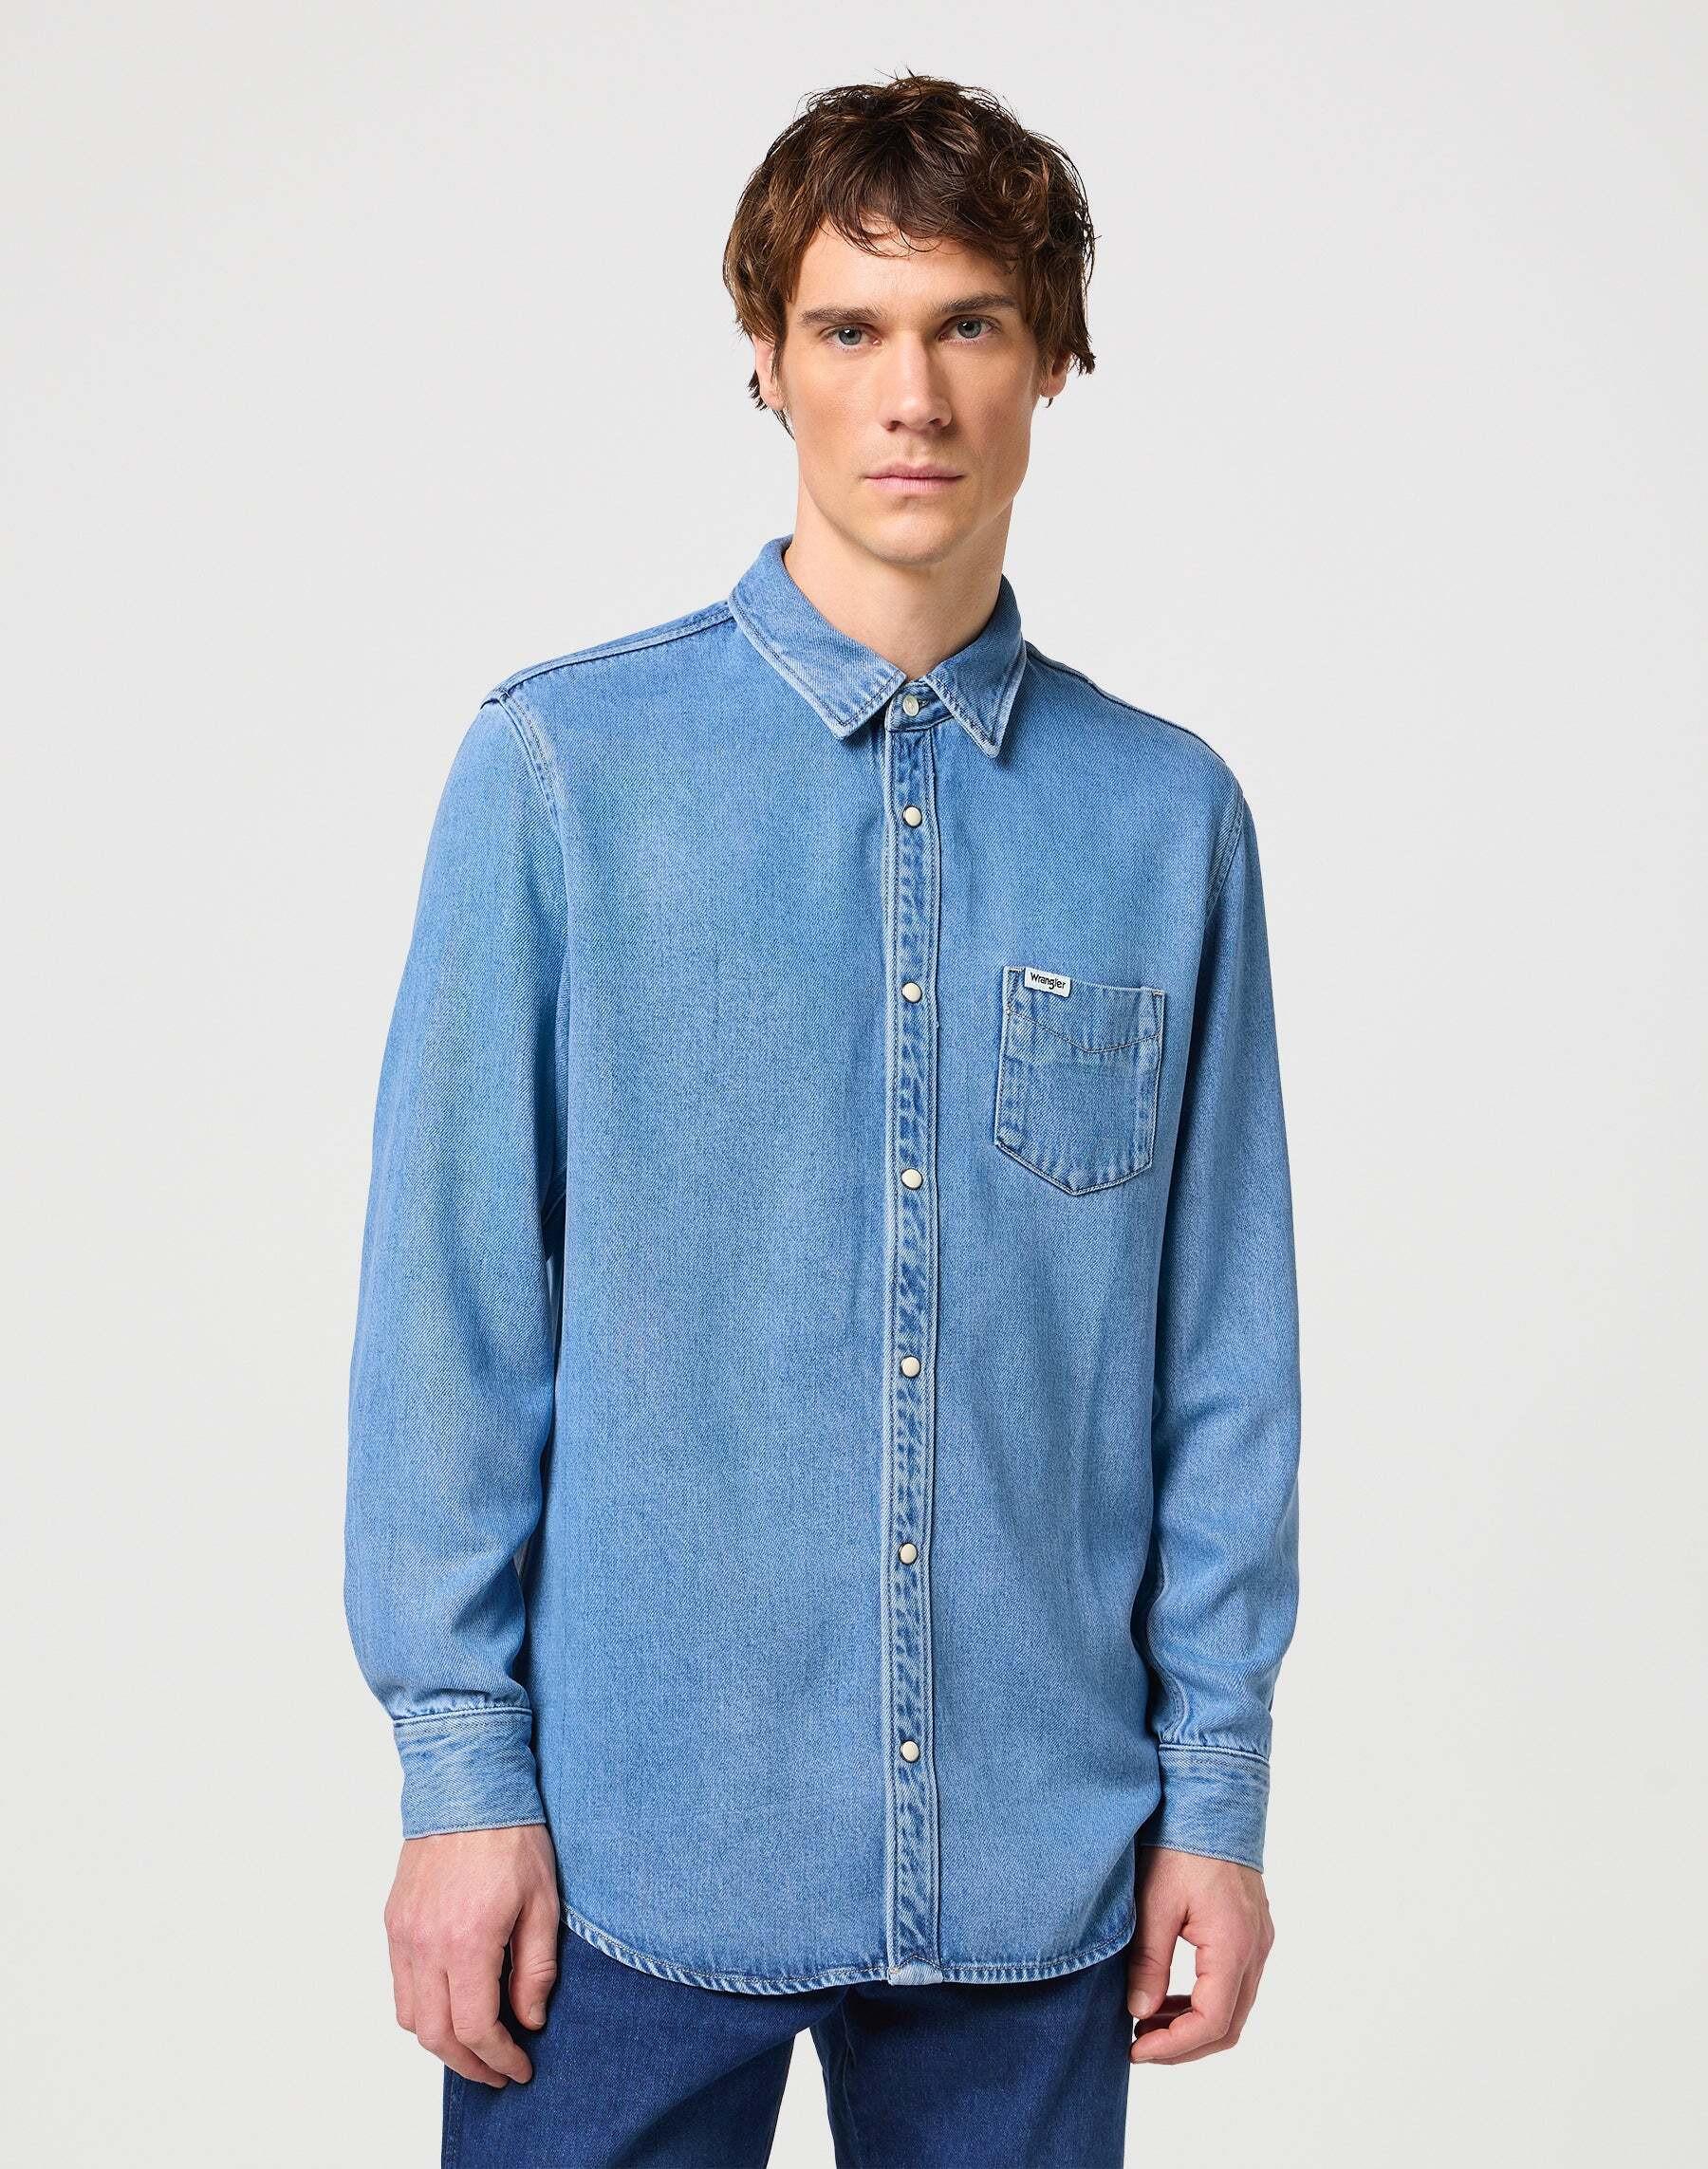 Hemden Longsleeves One Pocket Shirt Herren Blau M von Wrangler